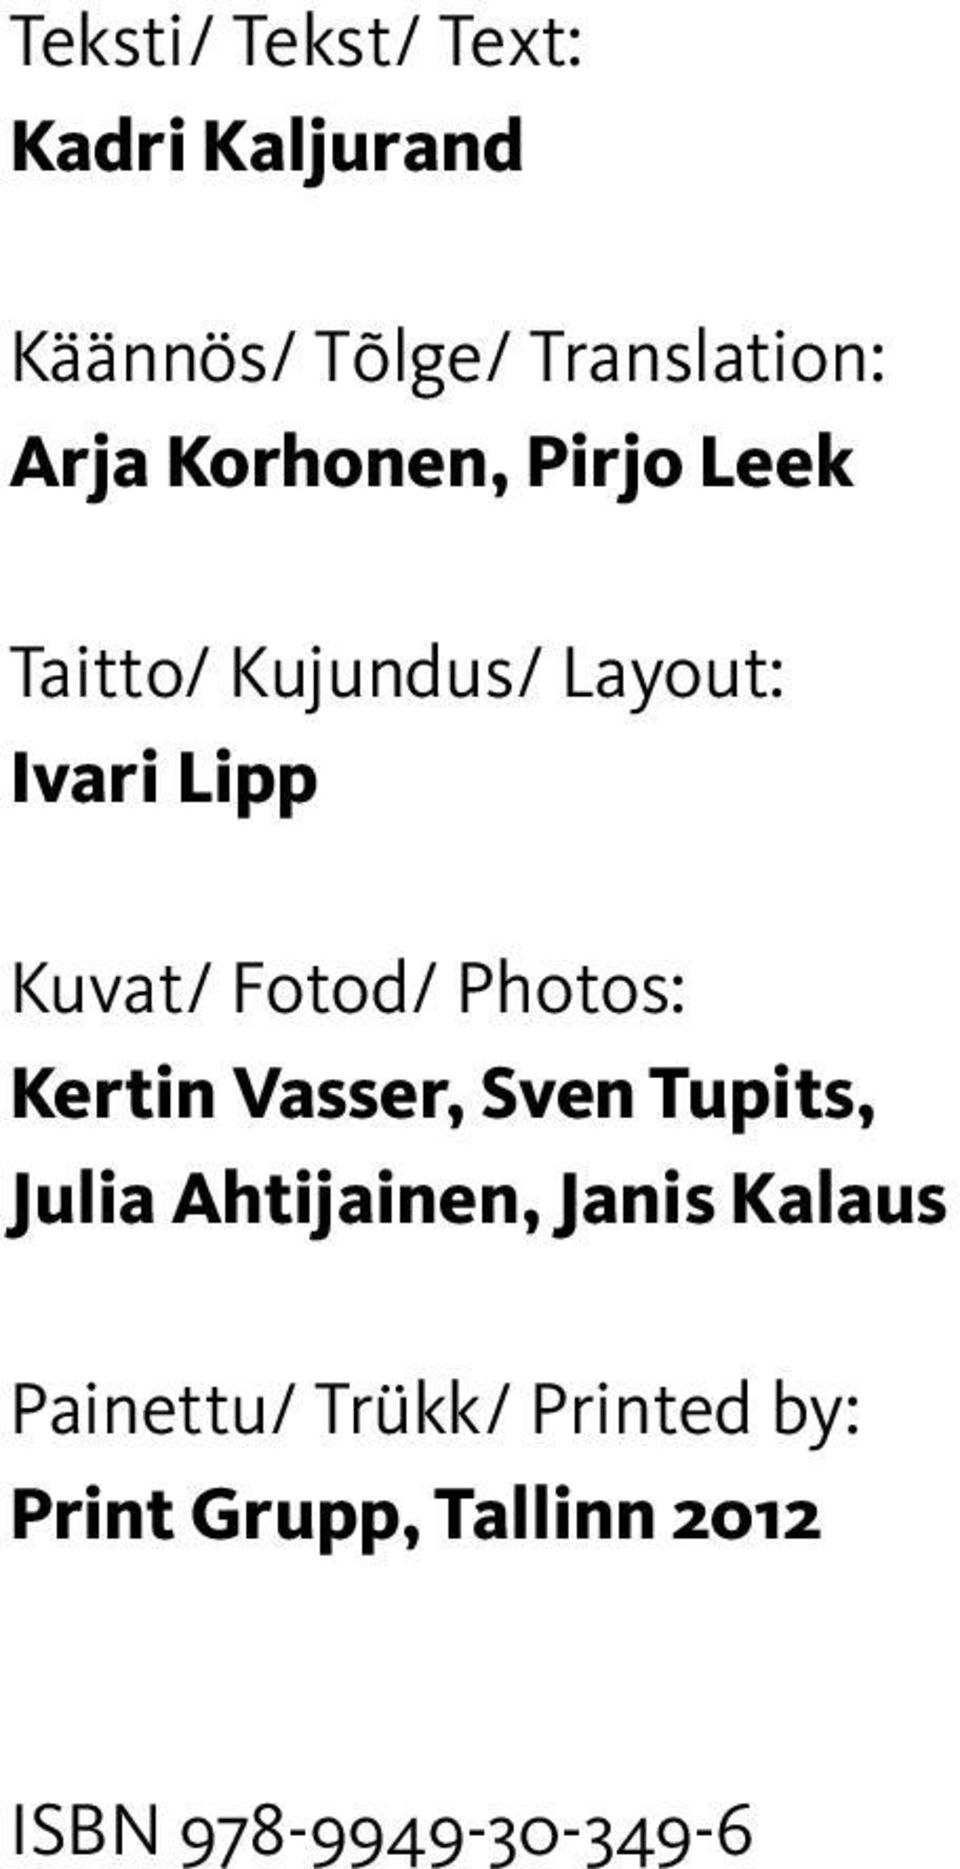 Photos: Kertin Vasser, Sven Tupits, Julia Ahtijainen, Janis Kalaus